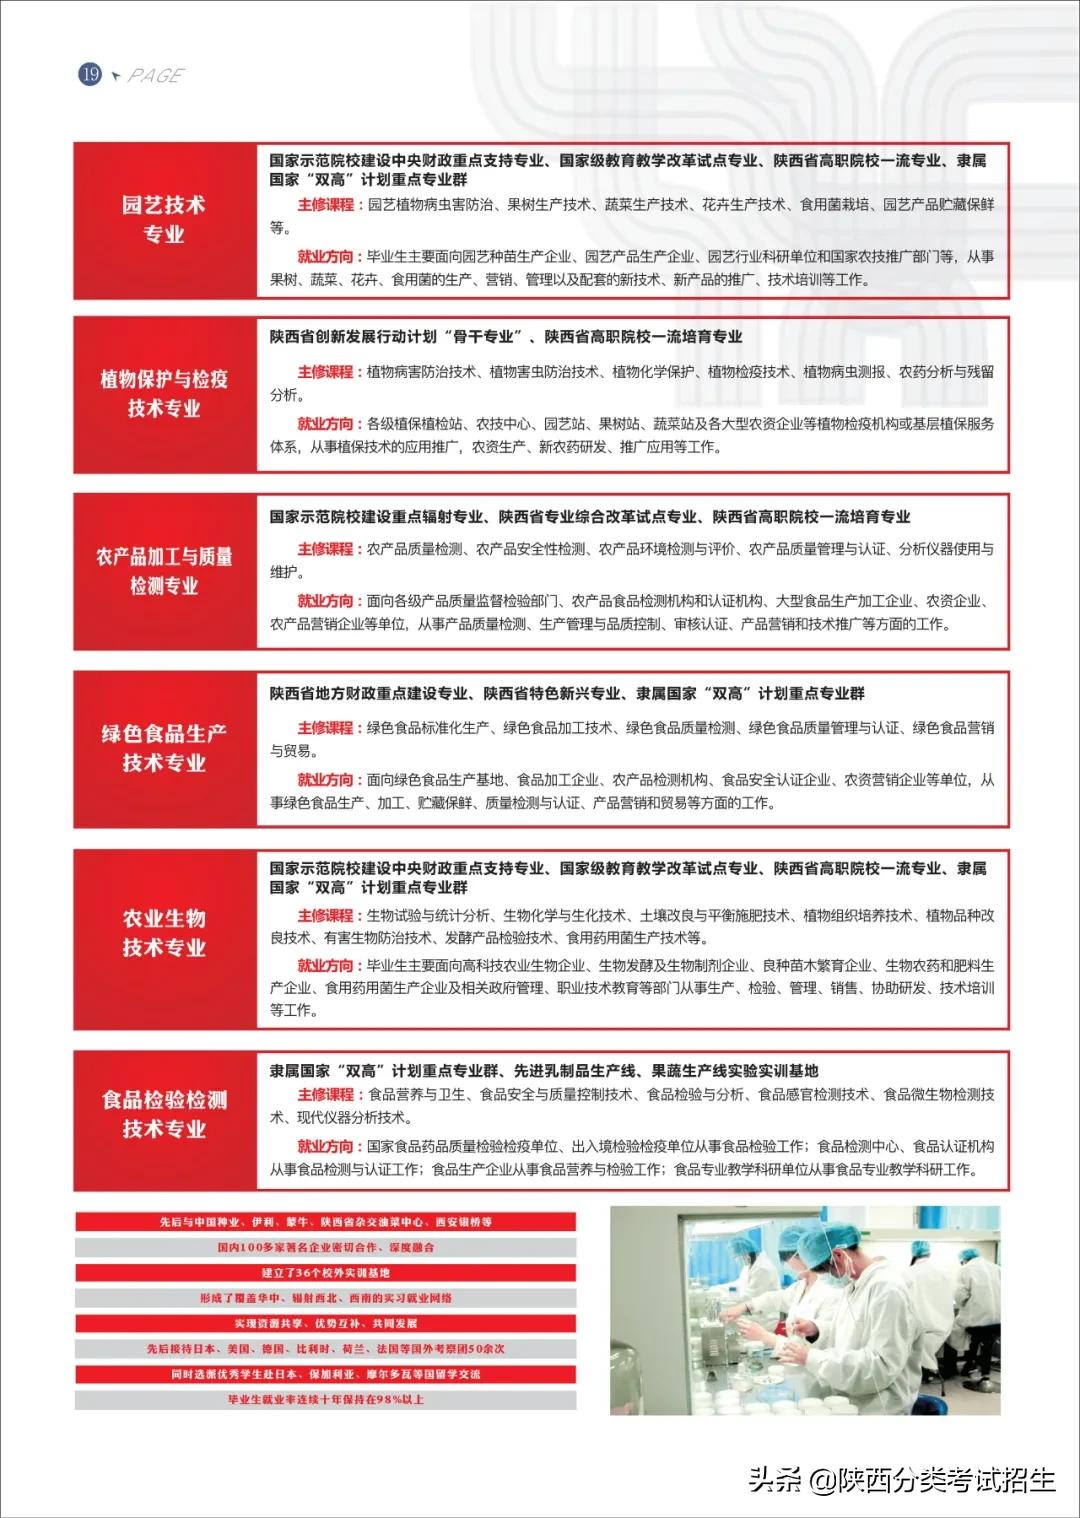 「招生简章」杨凌职业技术学院2022年单独考试招生简章